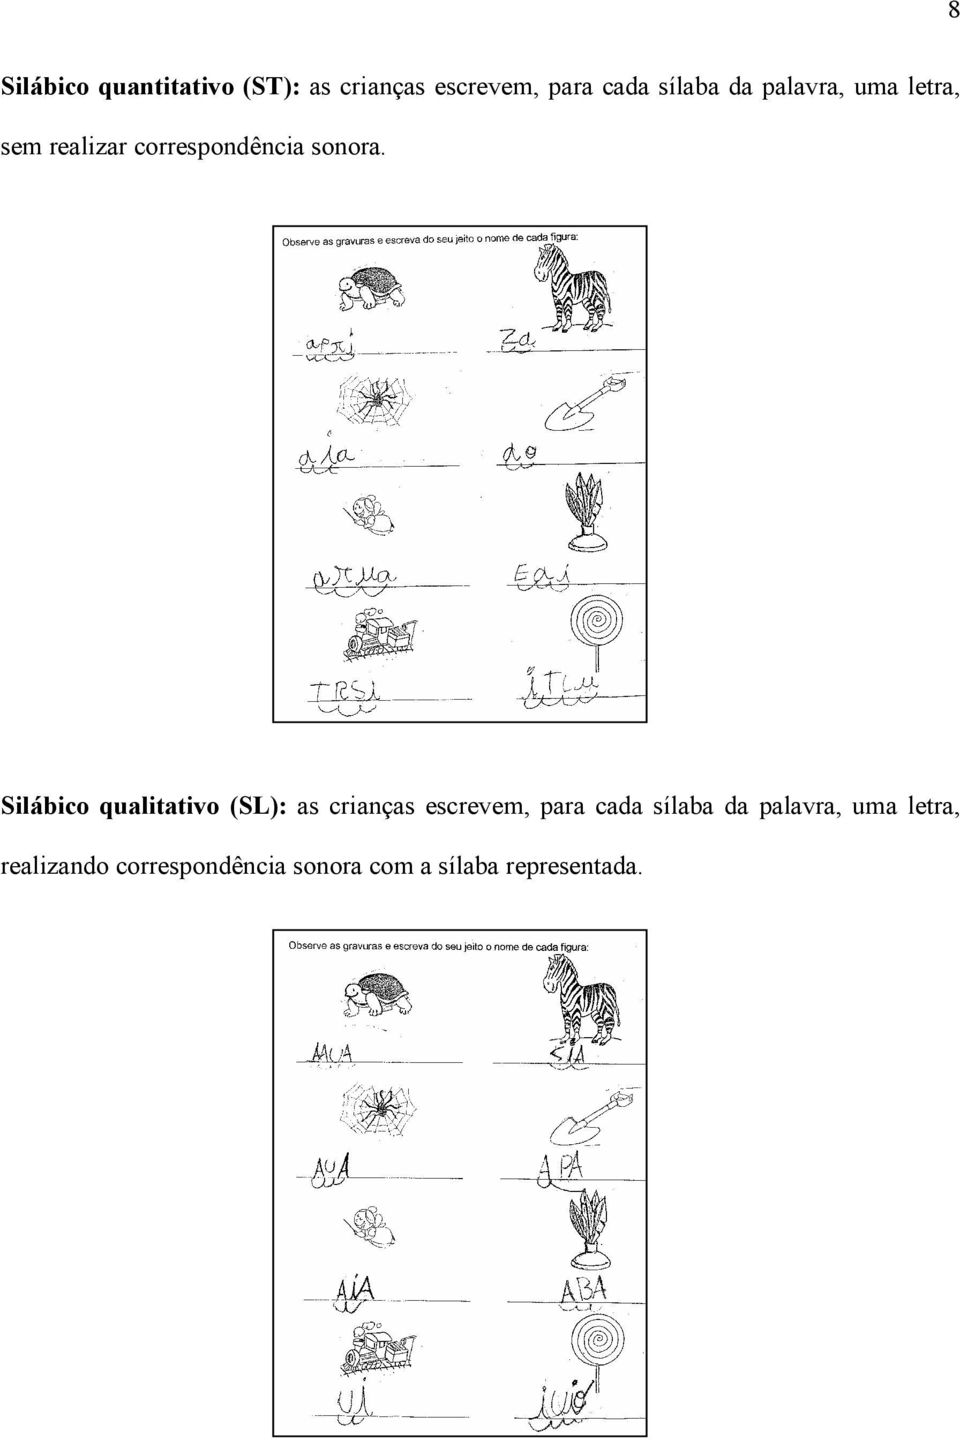 Silábico qualitativo (SL): as crianças escrevem, para cada sílaba da